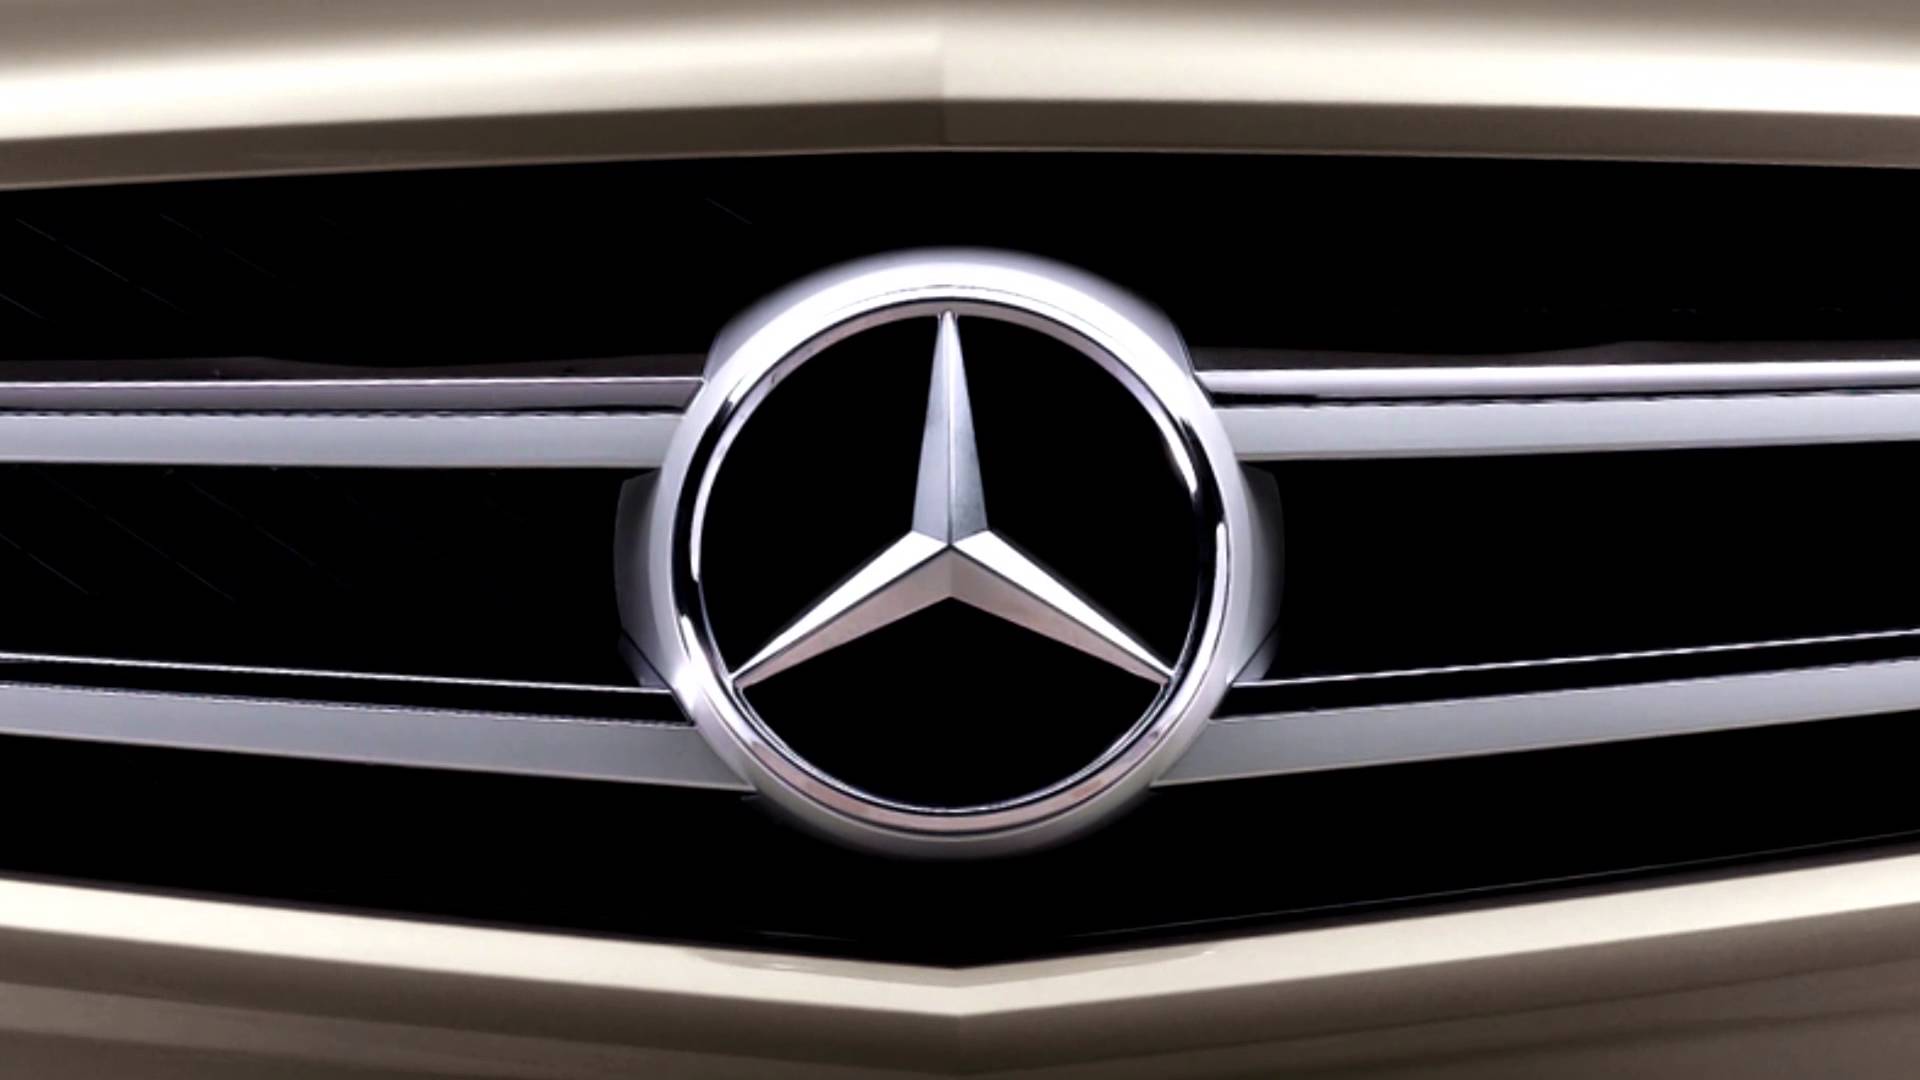 Mercedes Benz Logo Images Download Free Desktop Wallpaper Images